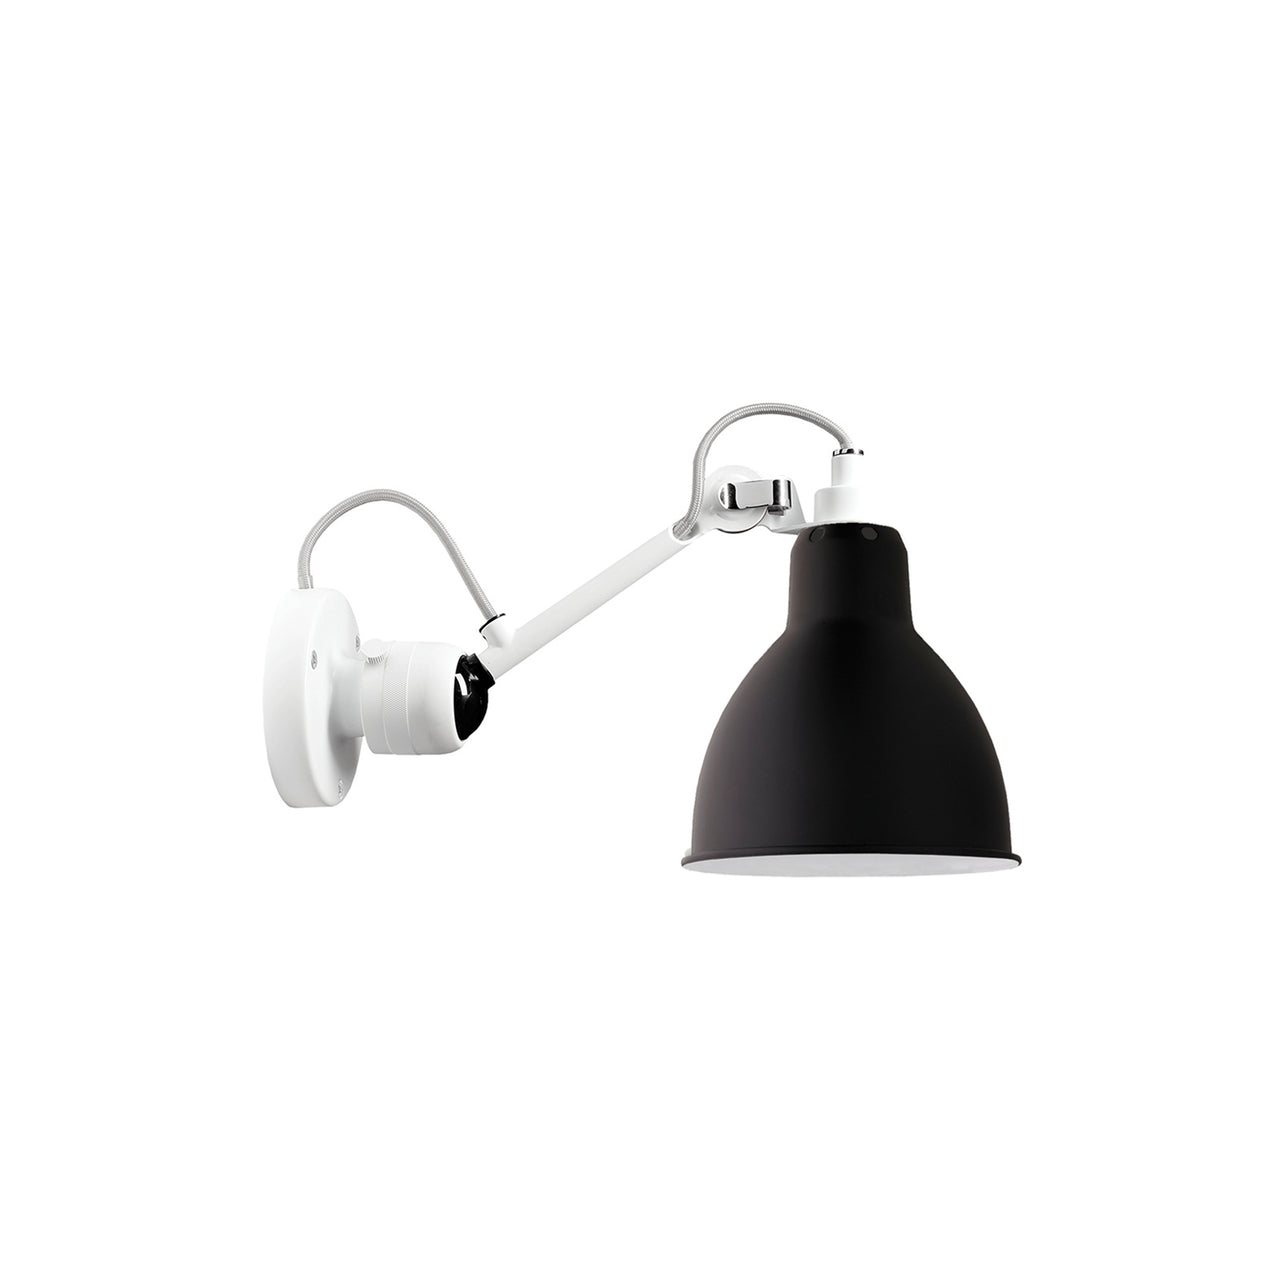 Lampe Gras N°304 Lamp: White + Black + Round